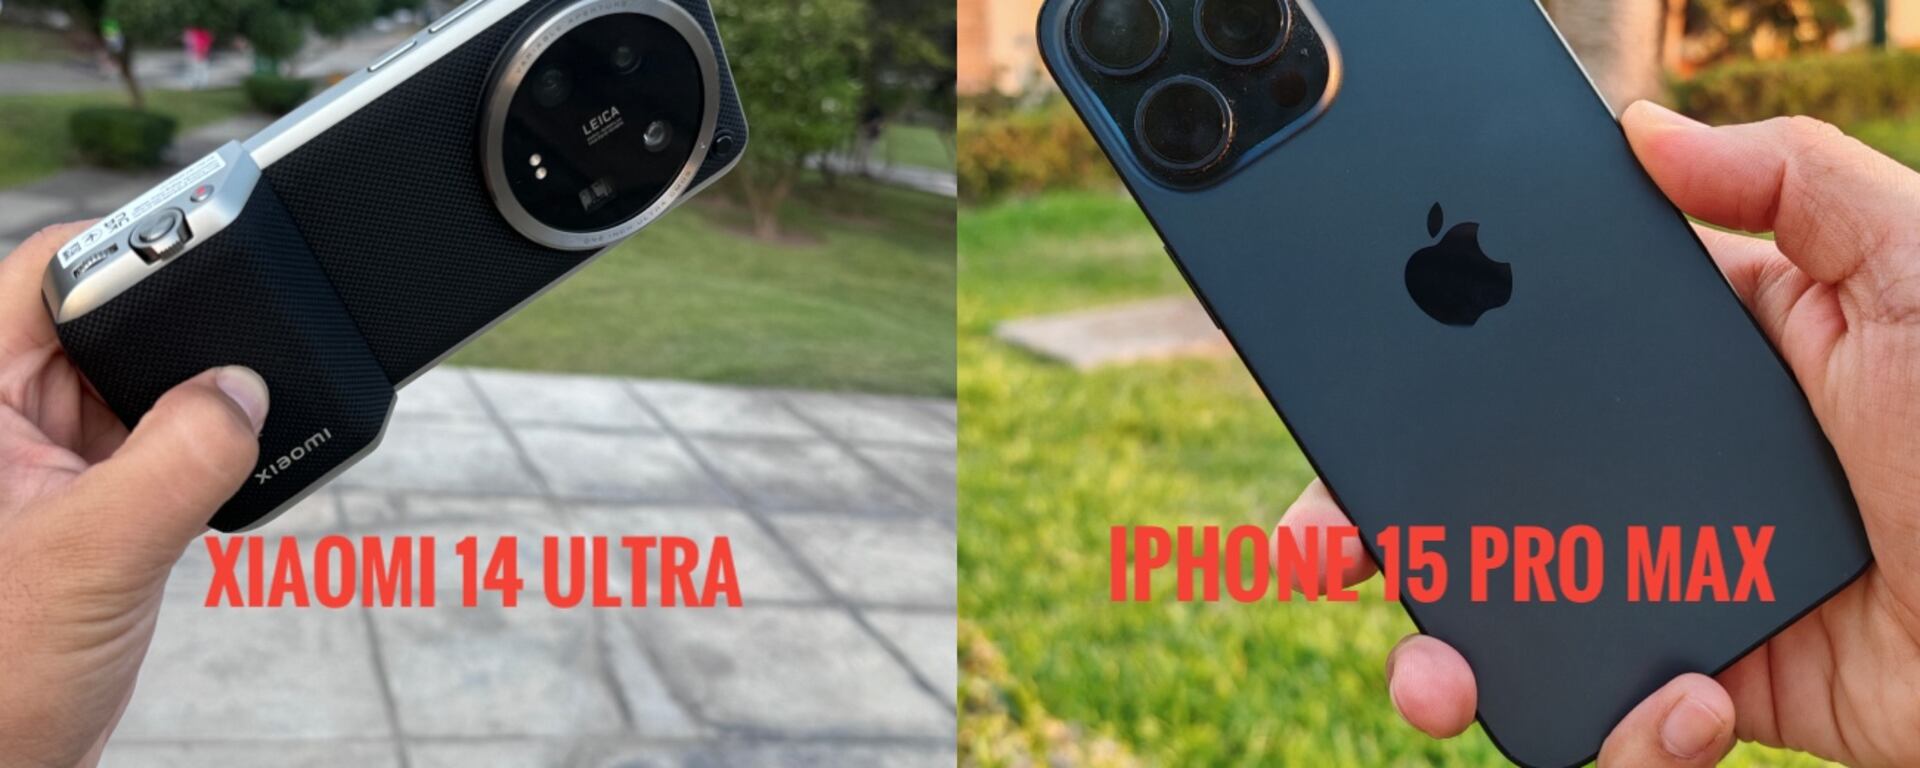 iPhone 15 Pro Max vs. Xiaomi 14 Ultra: comparamos las cámaras de dos de los mejores celulares del mercado 